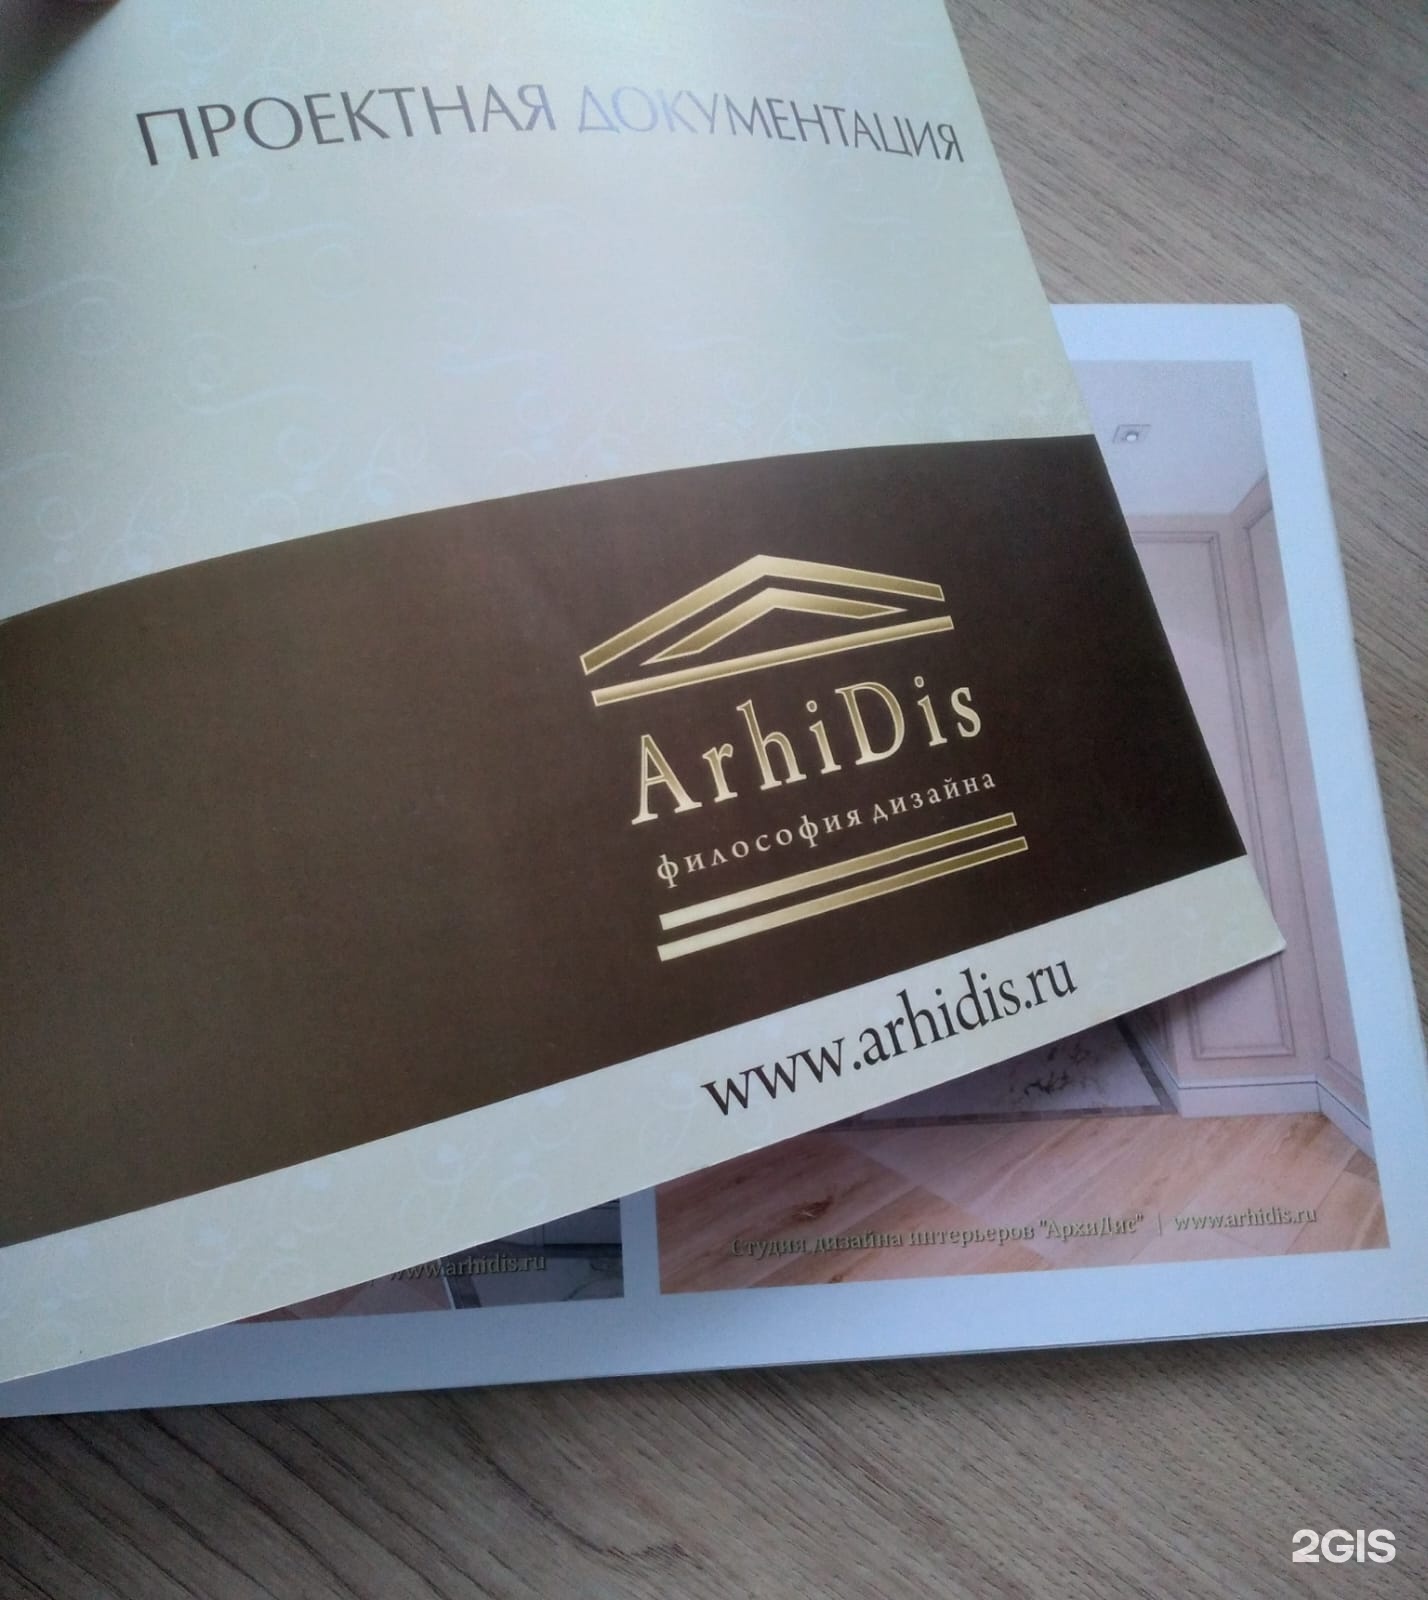 АрхиДис, студия дизайна интерьеров, улица Кирочная, 32, Санкт-Петербург — 2ГИС